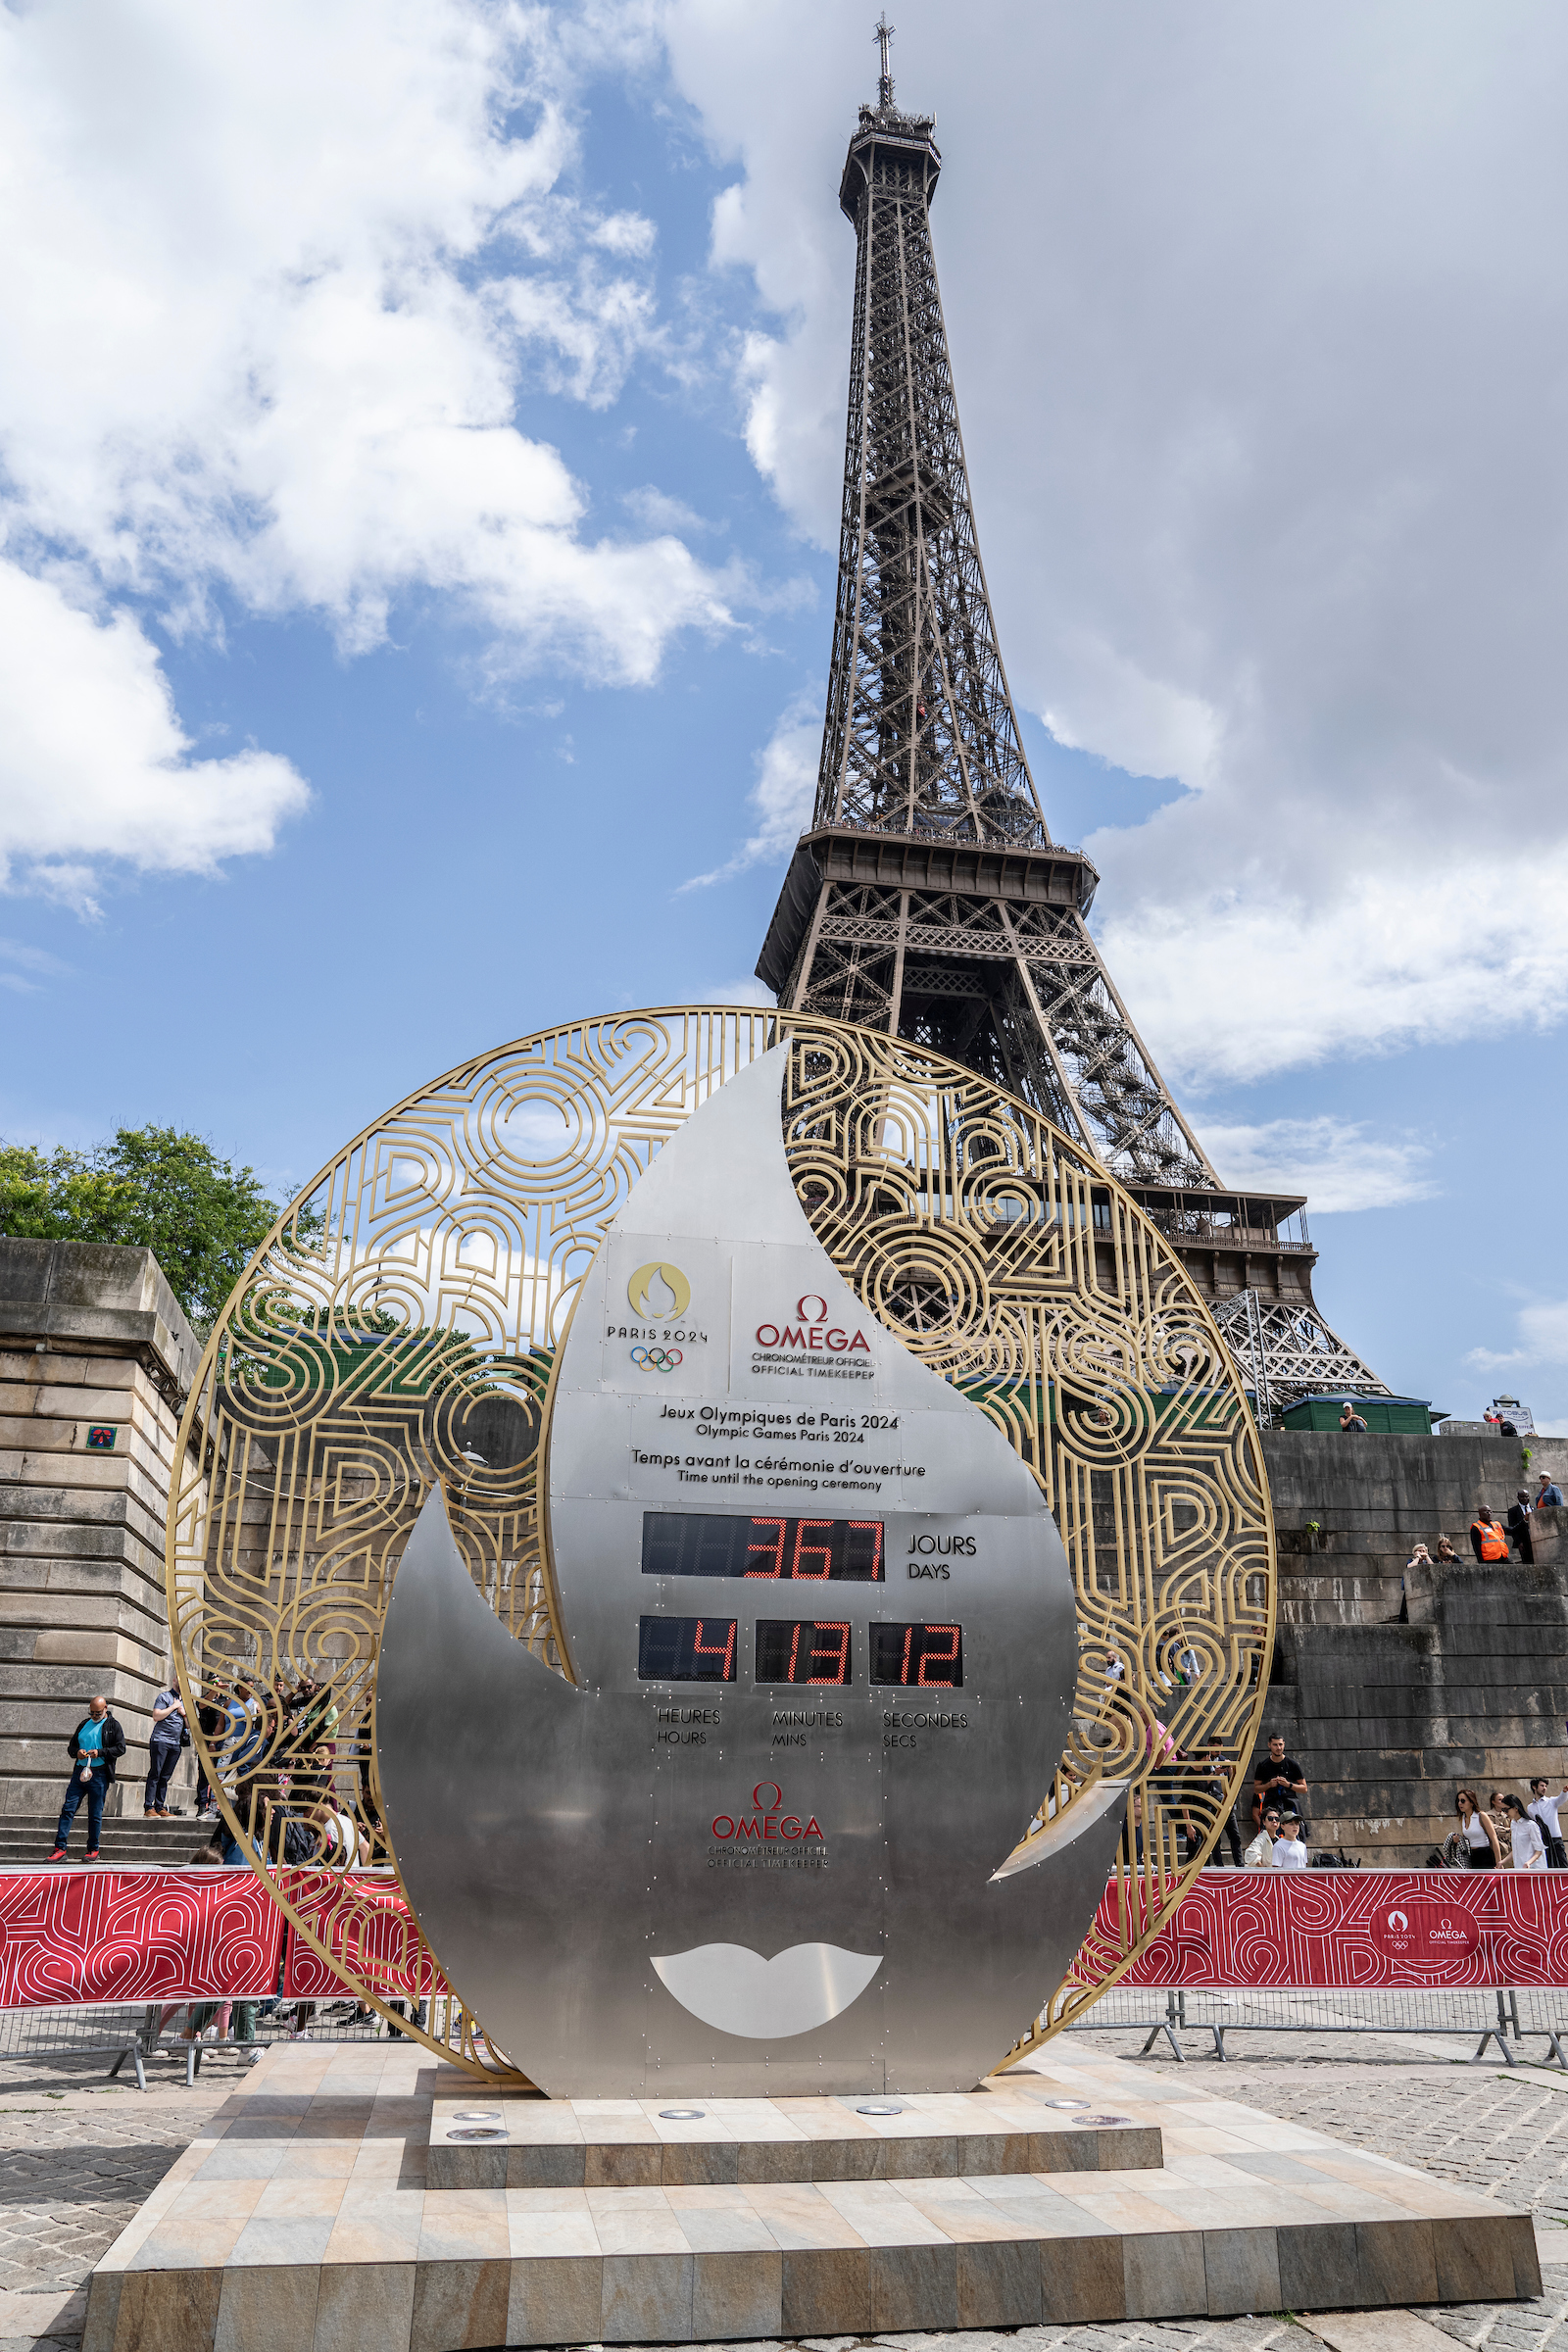 CazéTV vai transmitir os Jogos Olímpicos Paris 2024 em 2023